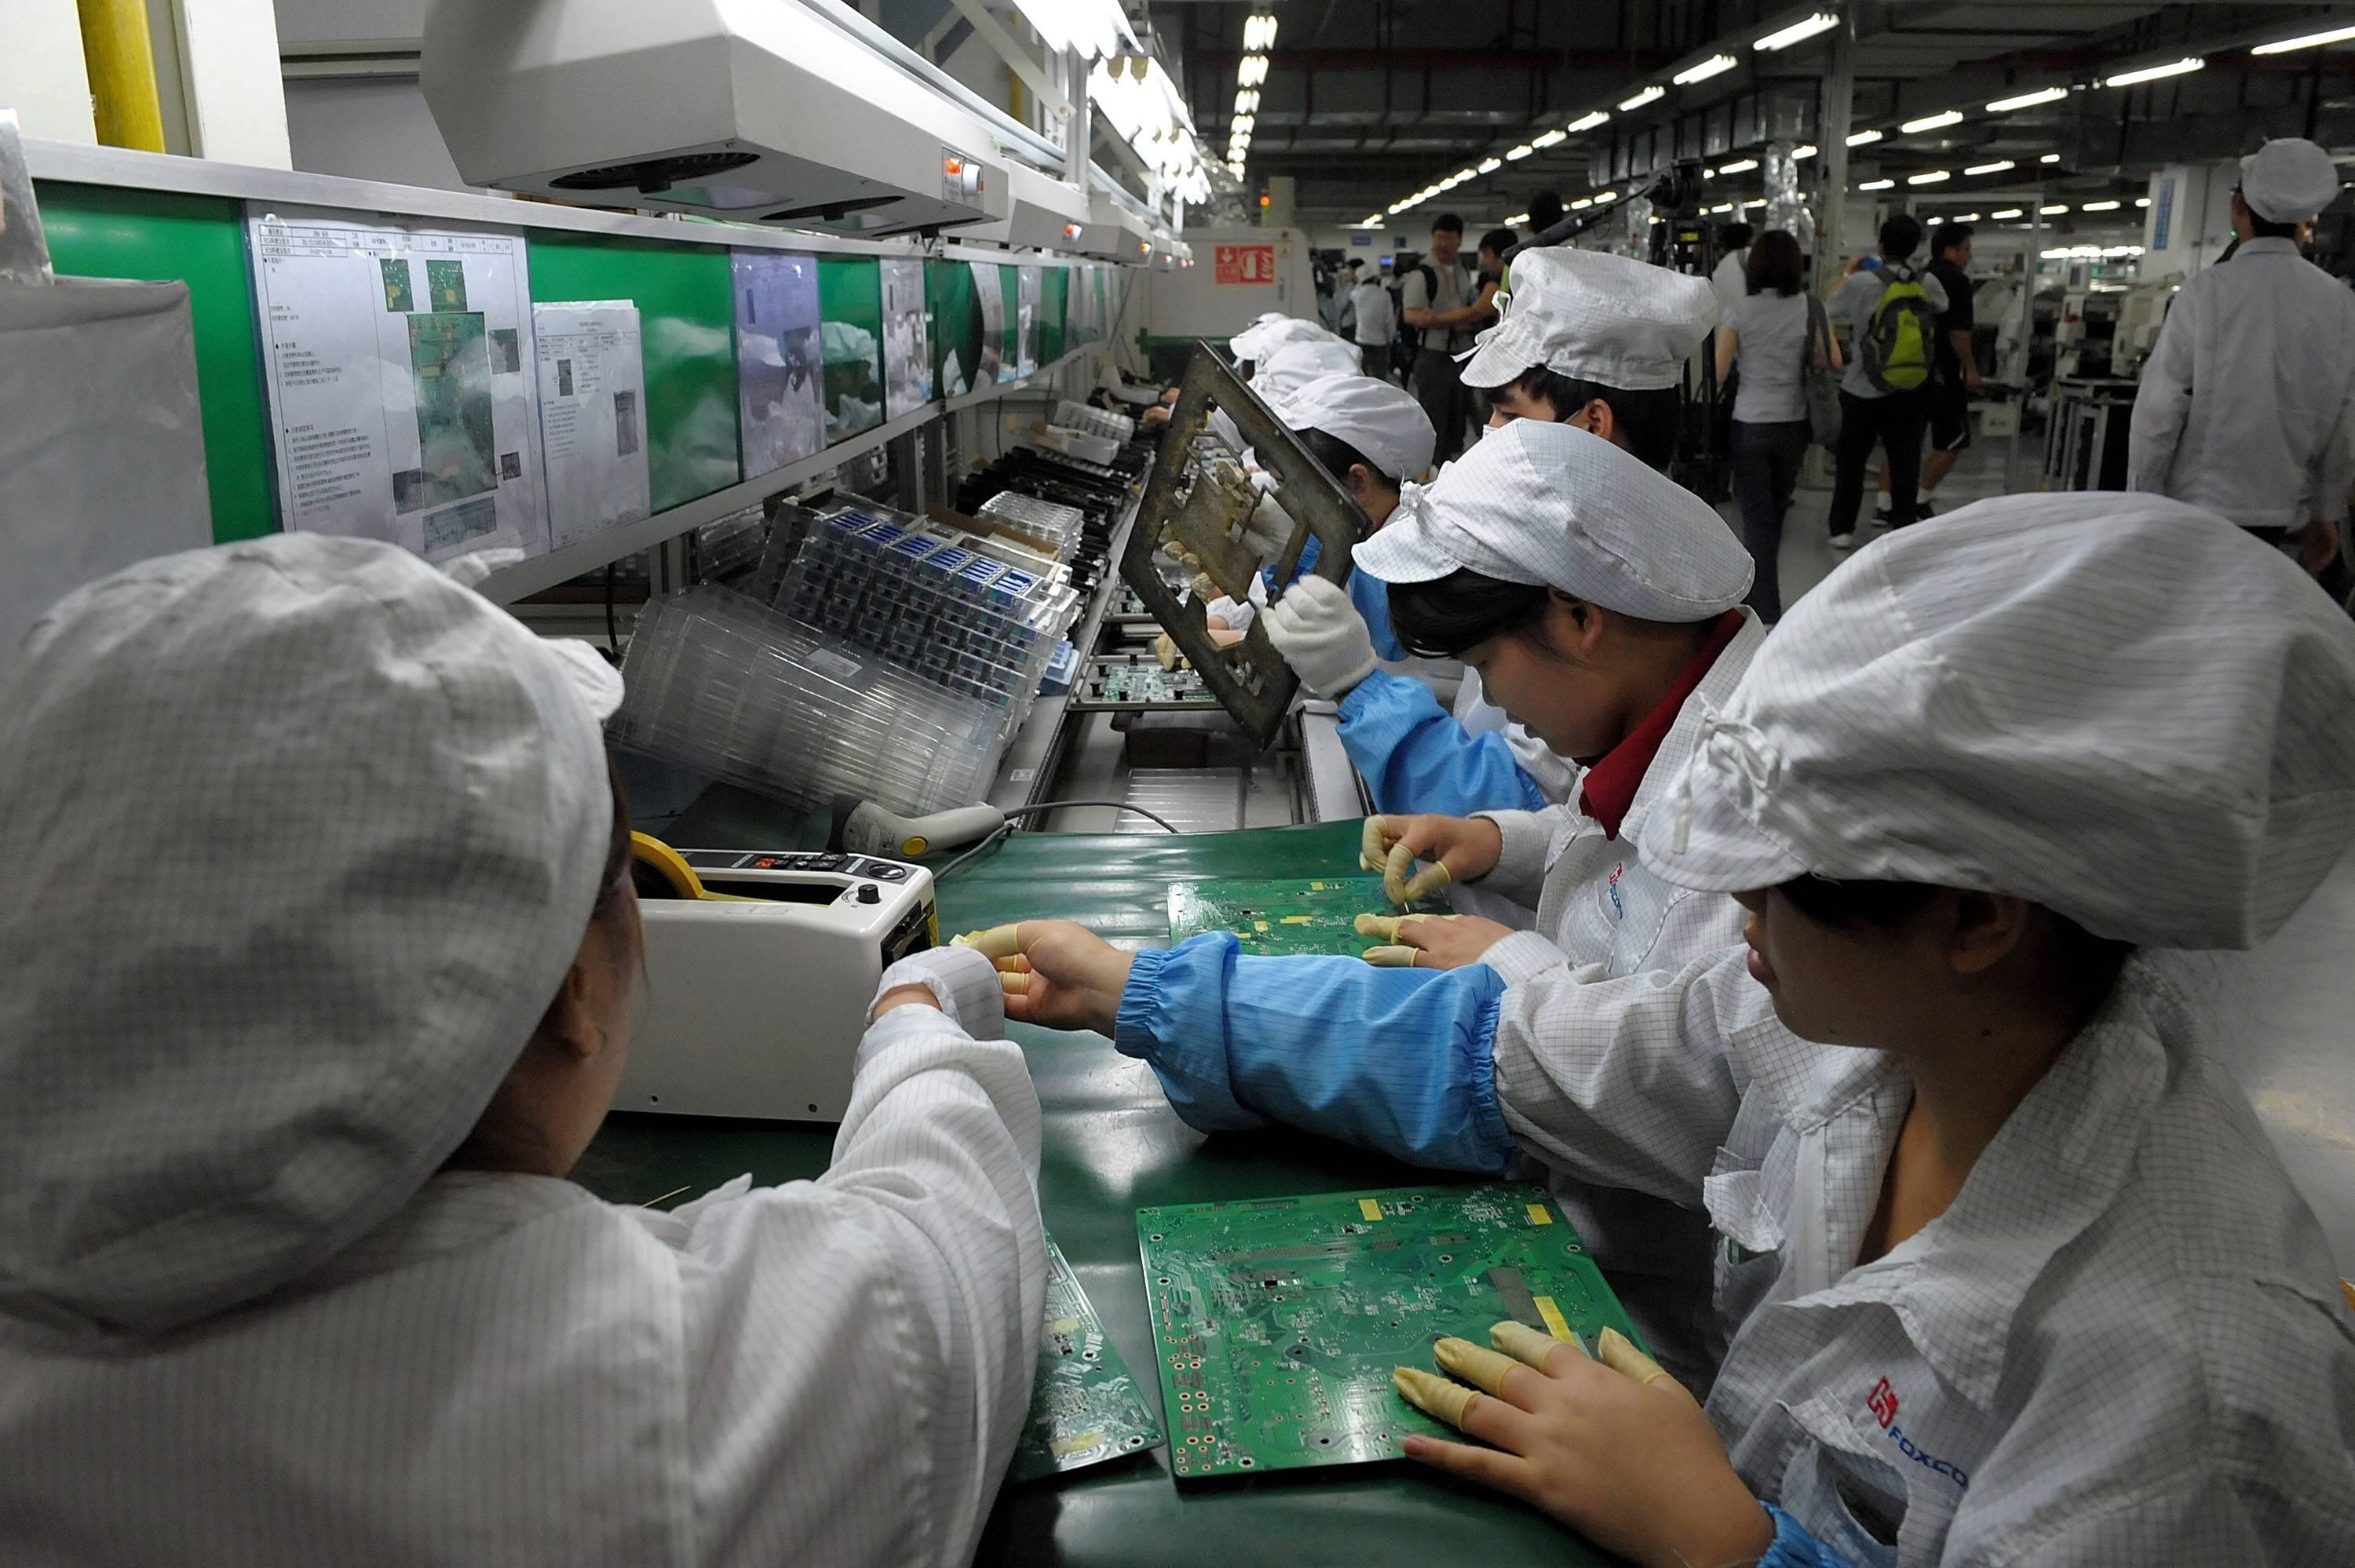 Arbeiterinnen in einer Foxconn-Fabrik in Shenzhen. Foxconn ist einer der führenden Hersteller von iPhones. Im Jahr 2010 hatten sich mehrere Foxconn-Beschäftigte aufgrund der unmenschliche Arbeitsbedingungen in den Tod gestürzt.